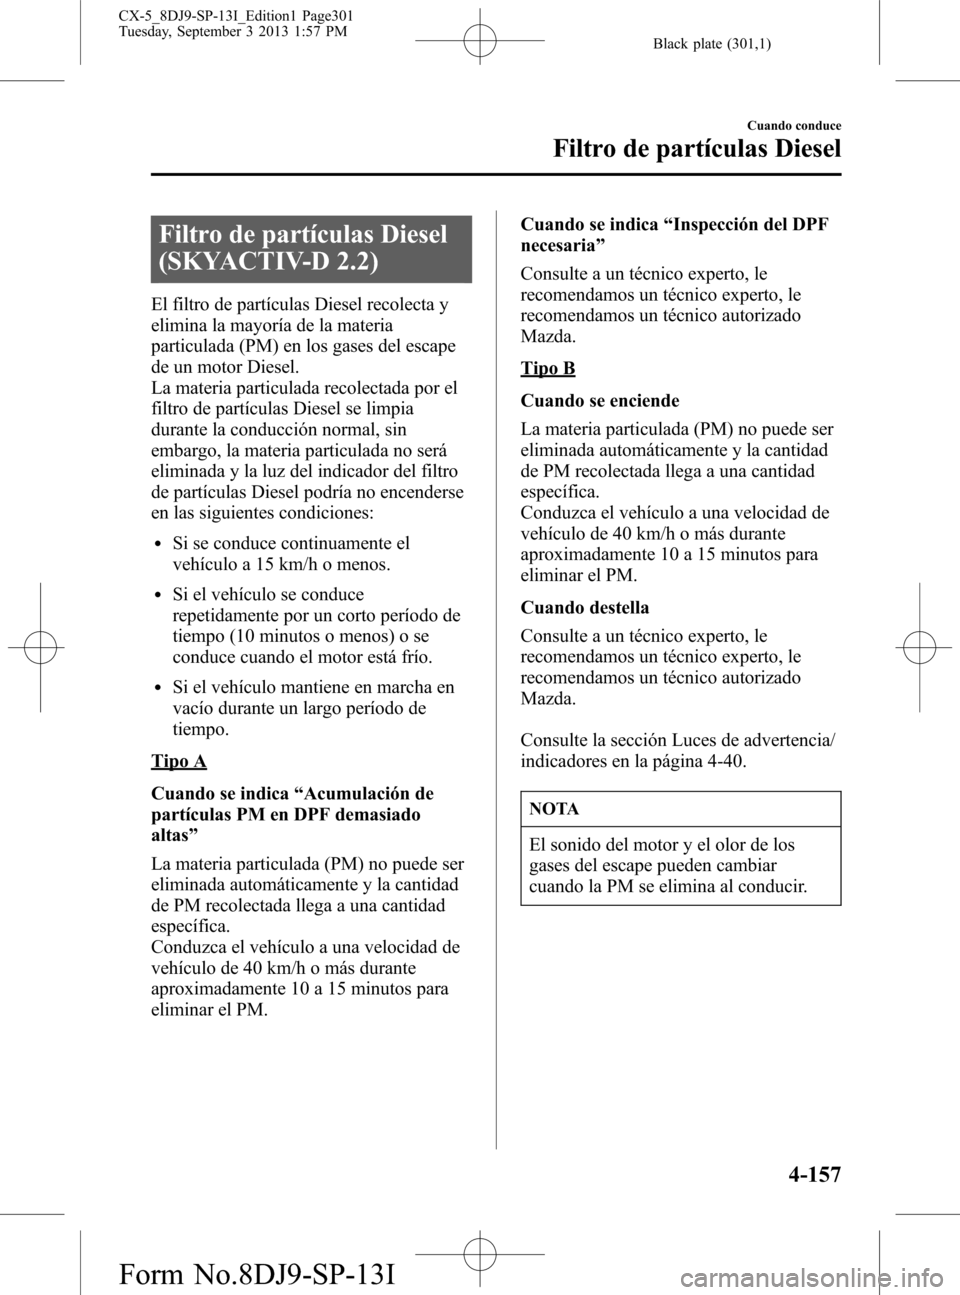 MAZDA MODEL CX-5 2014  Manual del propietario (in Spanish) Black plate (301,1)
Filtro de partículas Diesel
(SKYACTIV-D 2.2)
El filtro de partículas Diesel recolecta y
elimina la mayoría de la materia
particulada (PM) en los gases del escape
de un motor Die